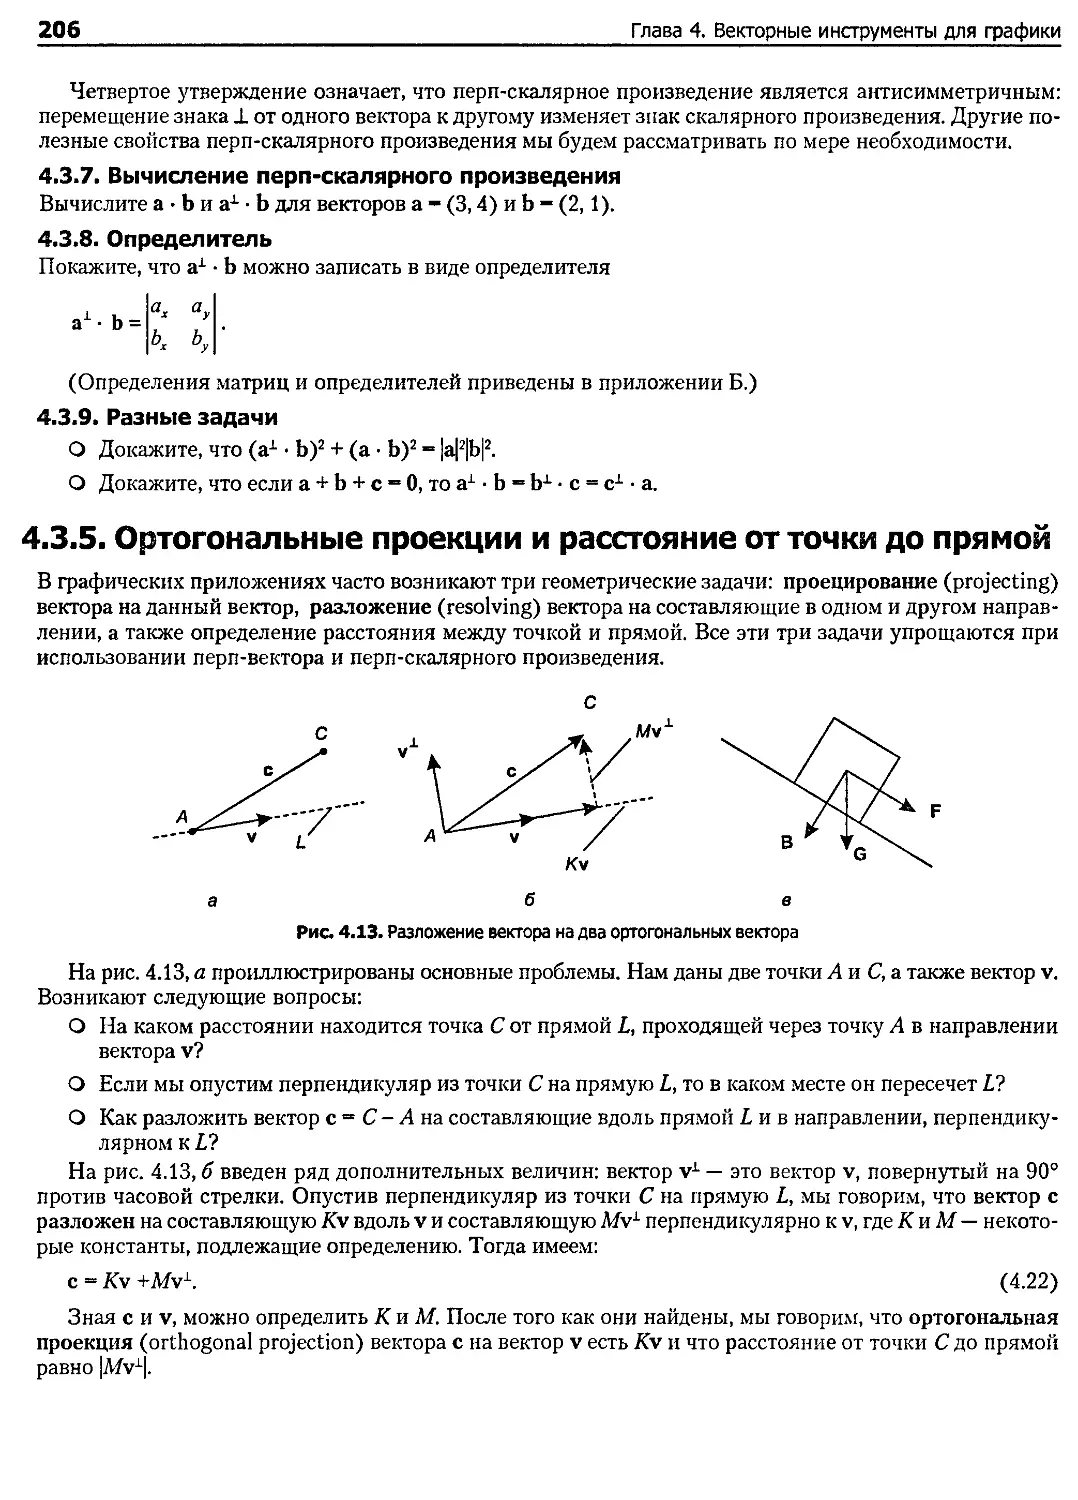 4.3.5. Ортогональные проекции и расстояние от точки до прямой